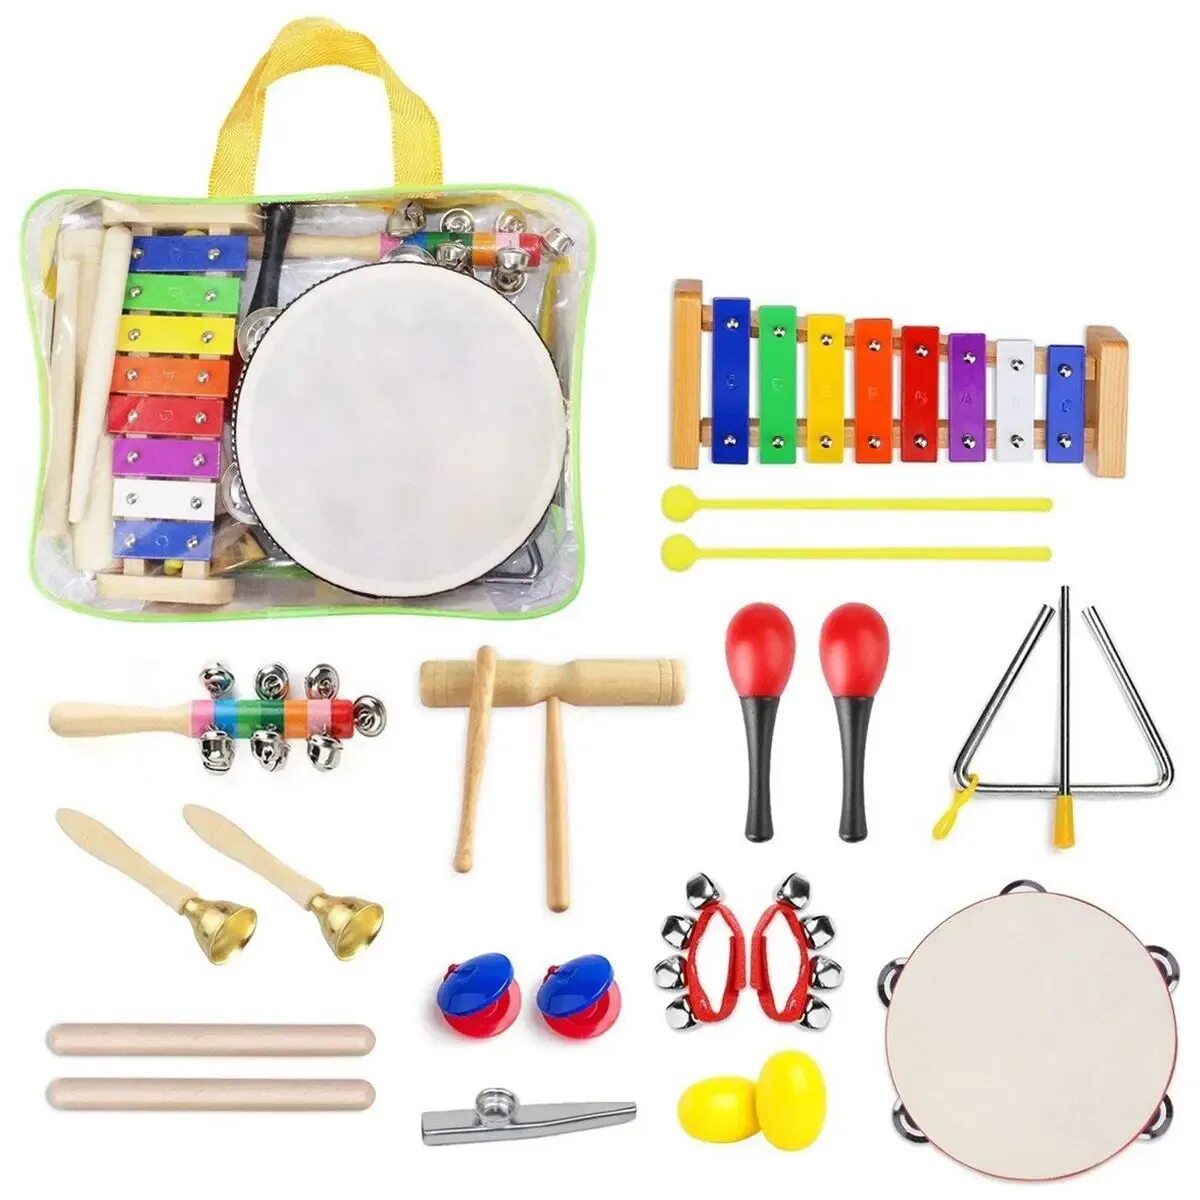 Музыкальные инструменты игрушки. Детские музыкальные инструменты. Набор детских музыкальных инструментов. Набор музыкальных инструментов для детского сада.